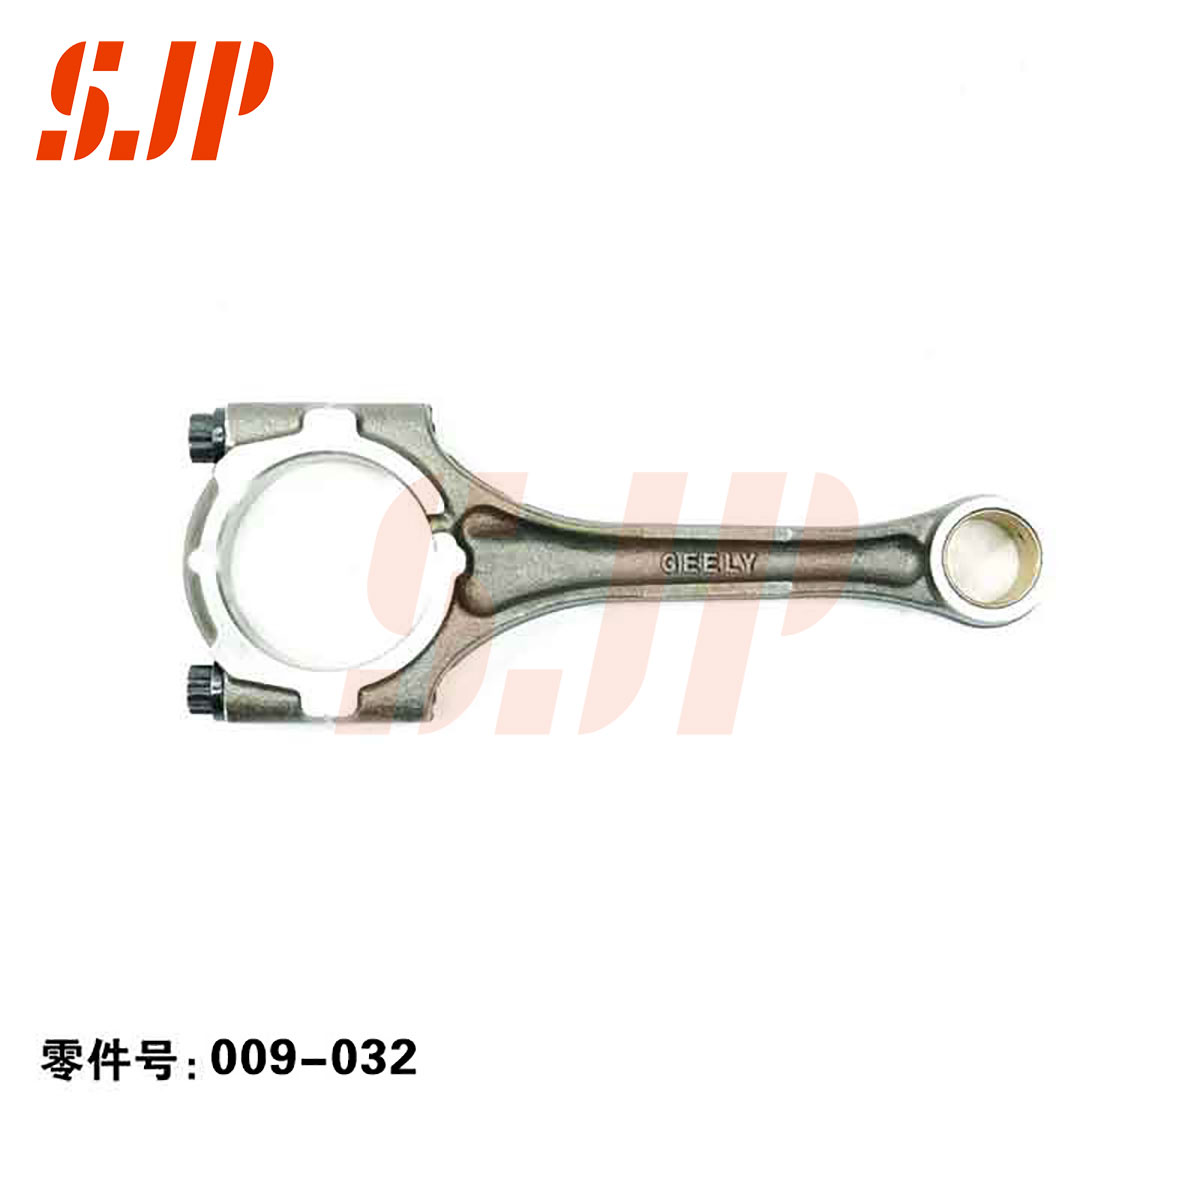 SJ-009-032 Connecting Rod For Baojun 1.8/Wuling Zhengcheng 1.8/Geely 4G18CVVT/Lifan 1.8